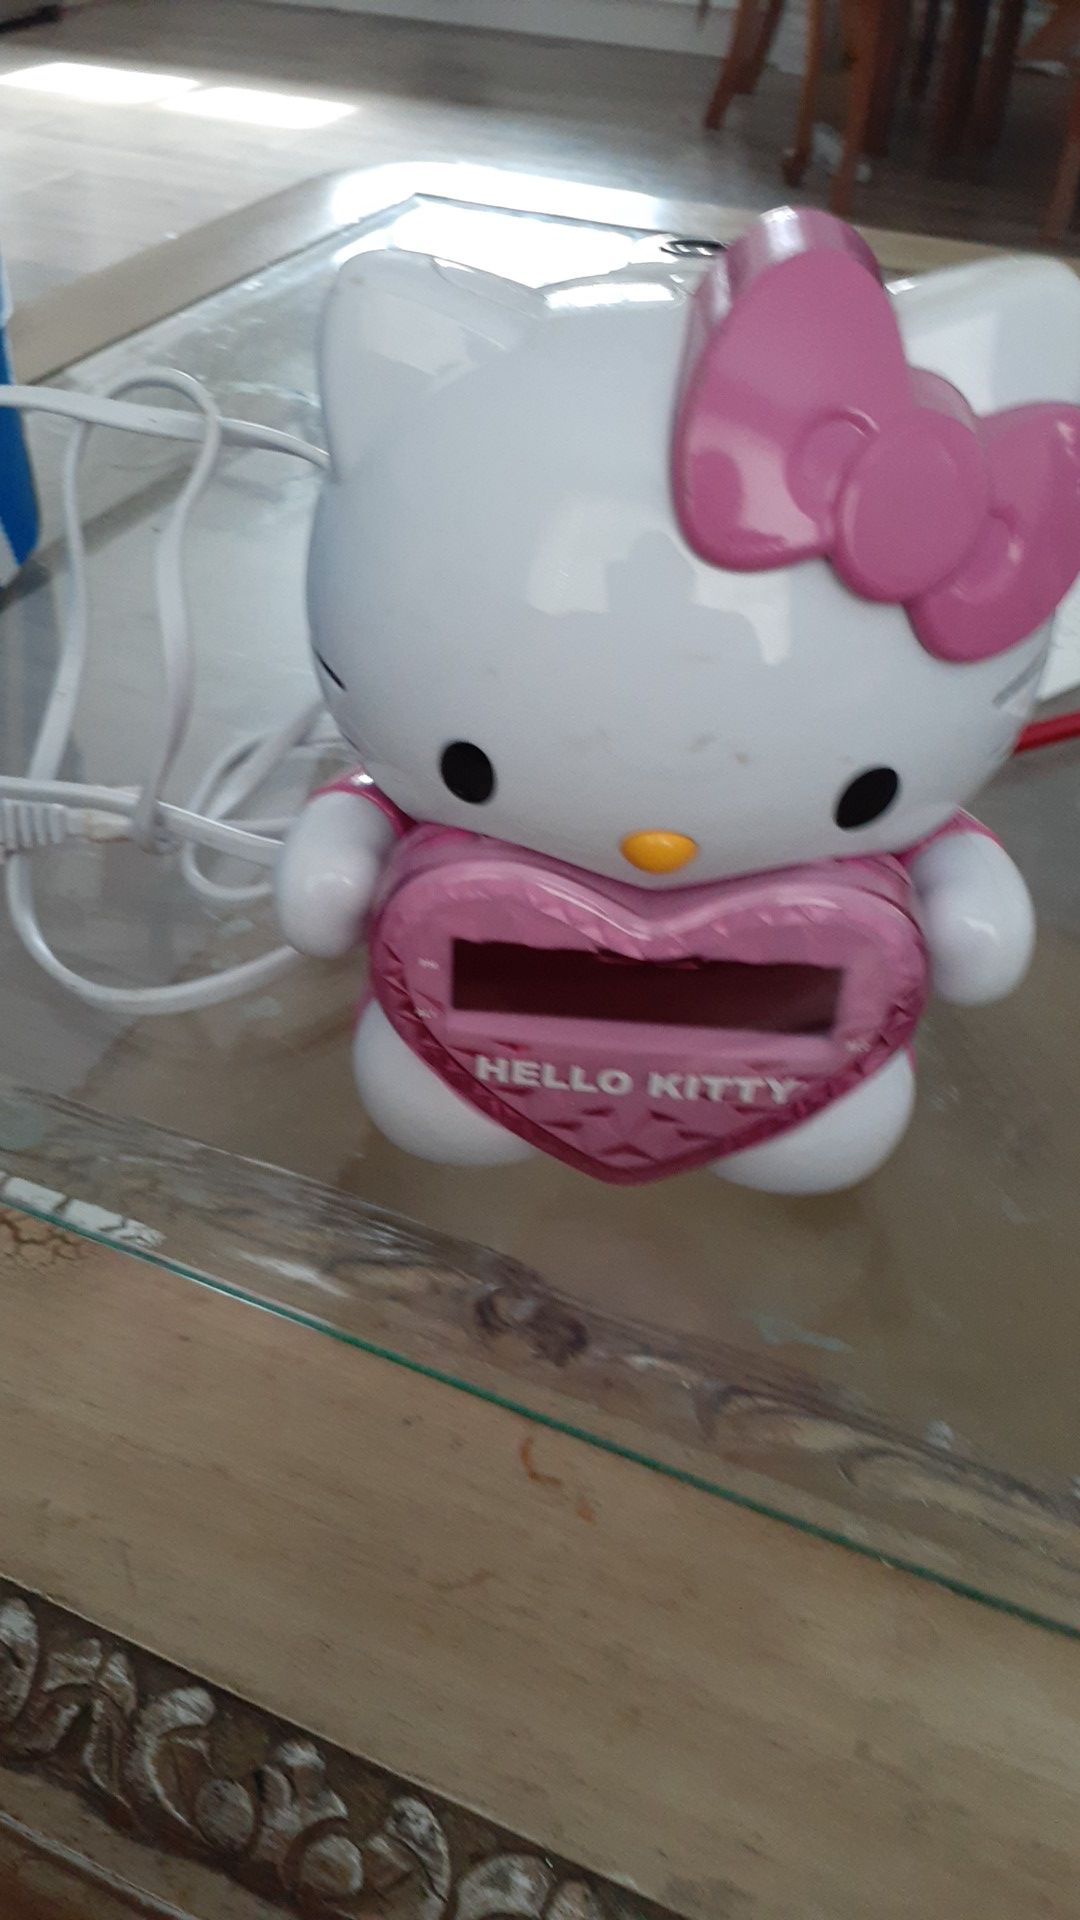 Hello Kitty Alarm, Radio and clock